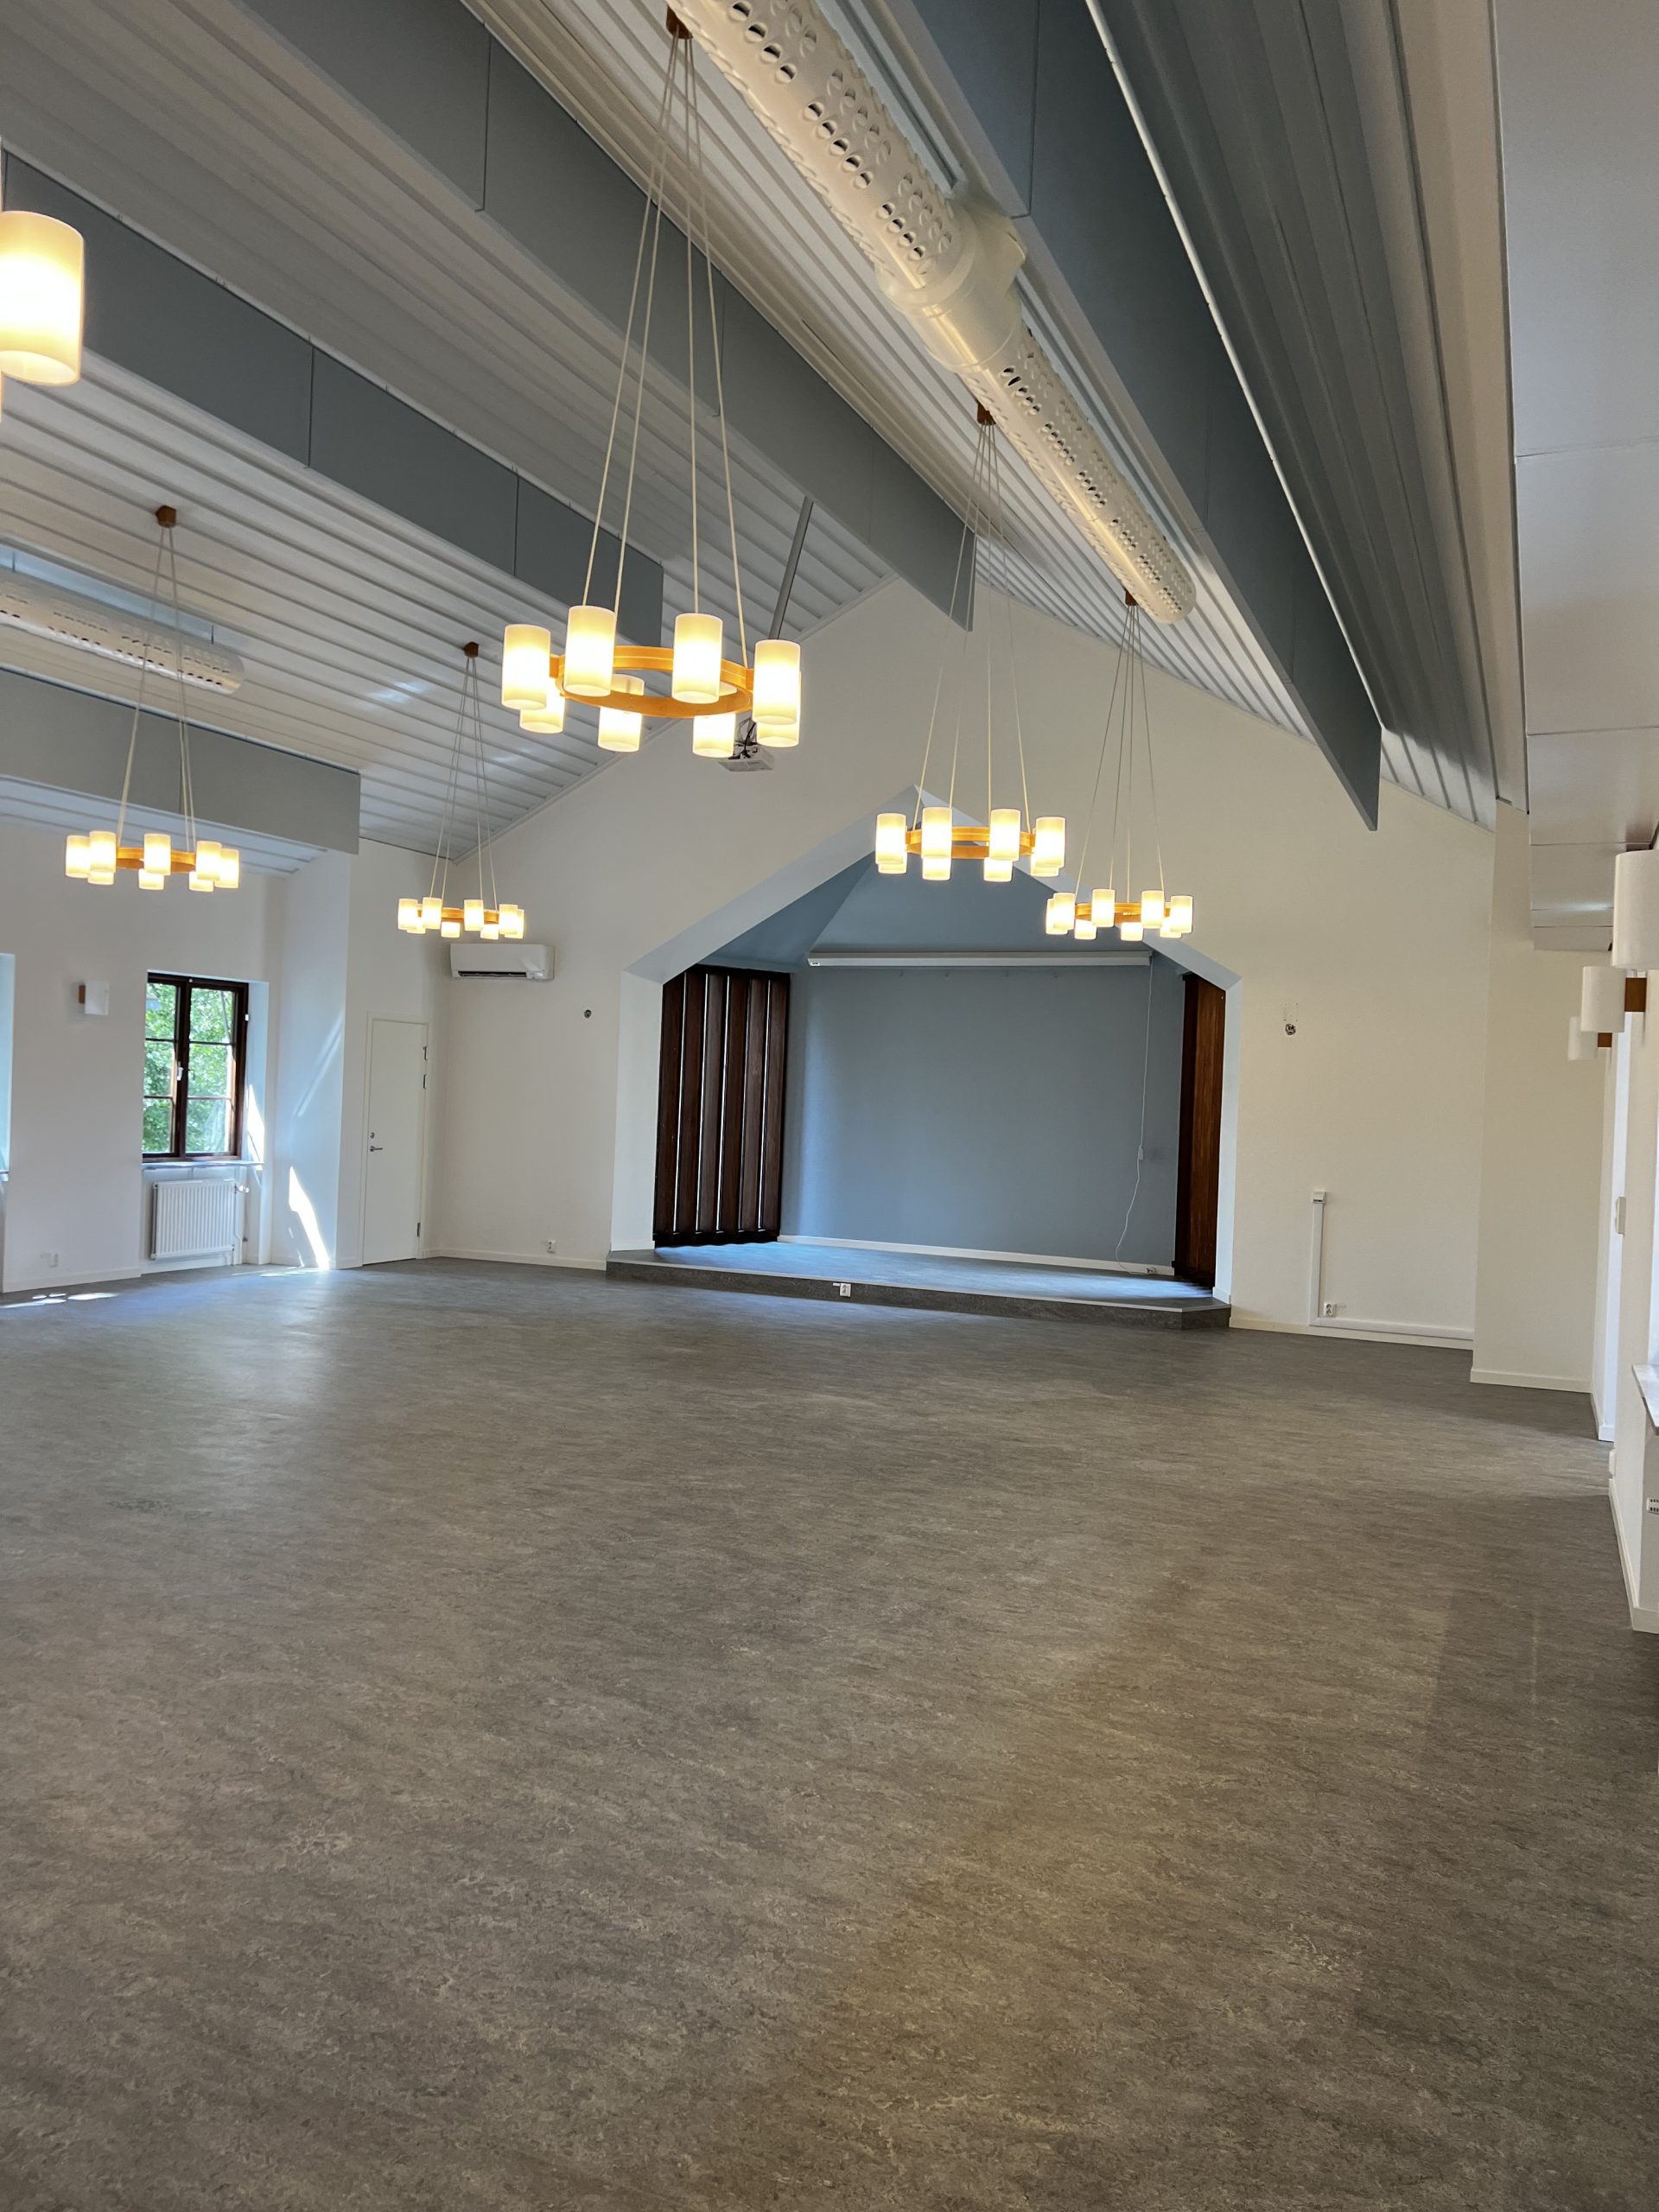 Öppen och luftigt sällskapsrum i Svenska kyrkans församlingshem i Hörby